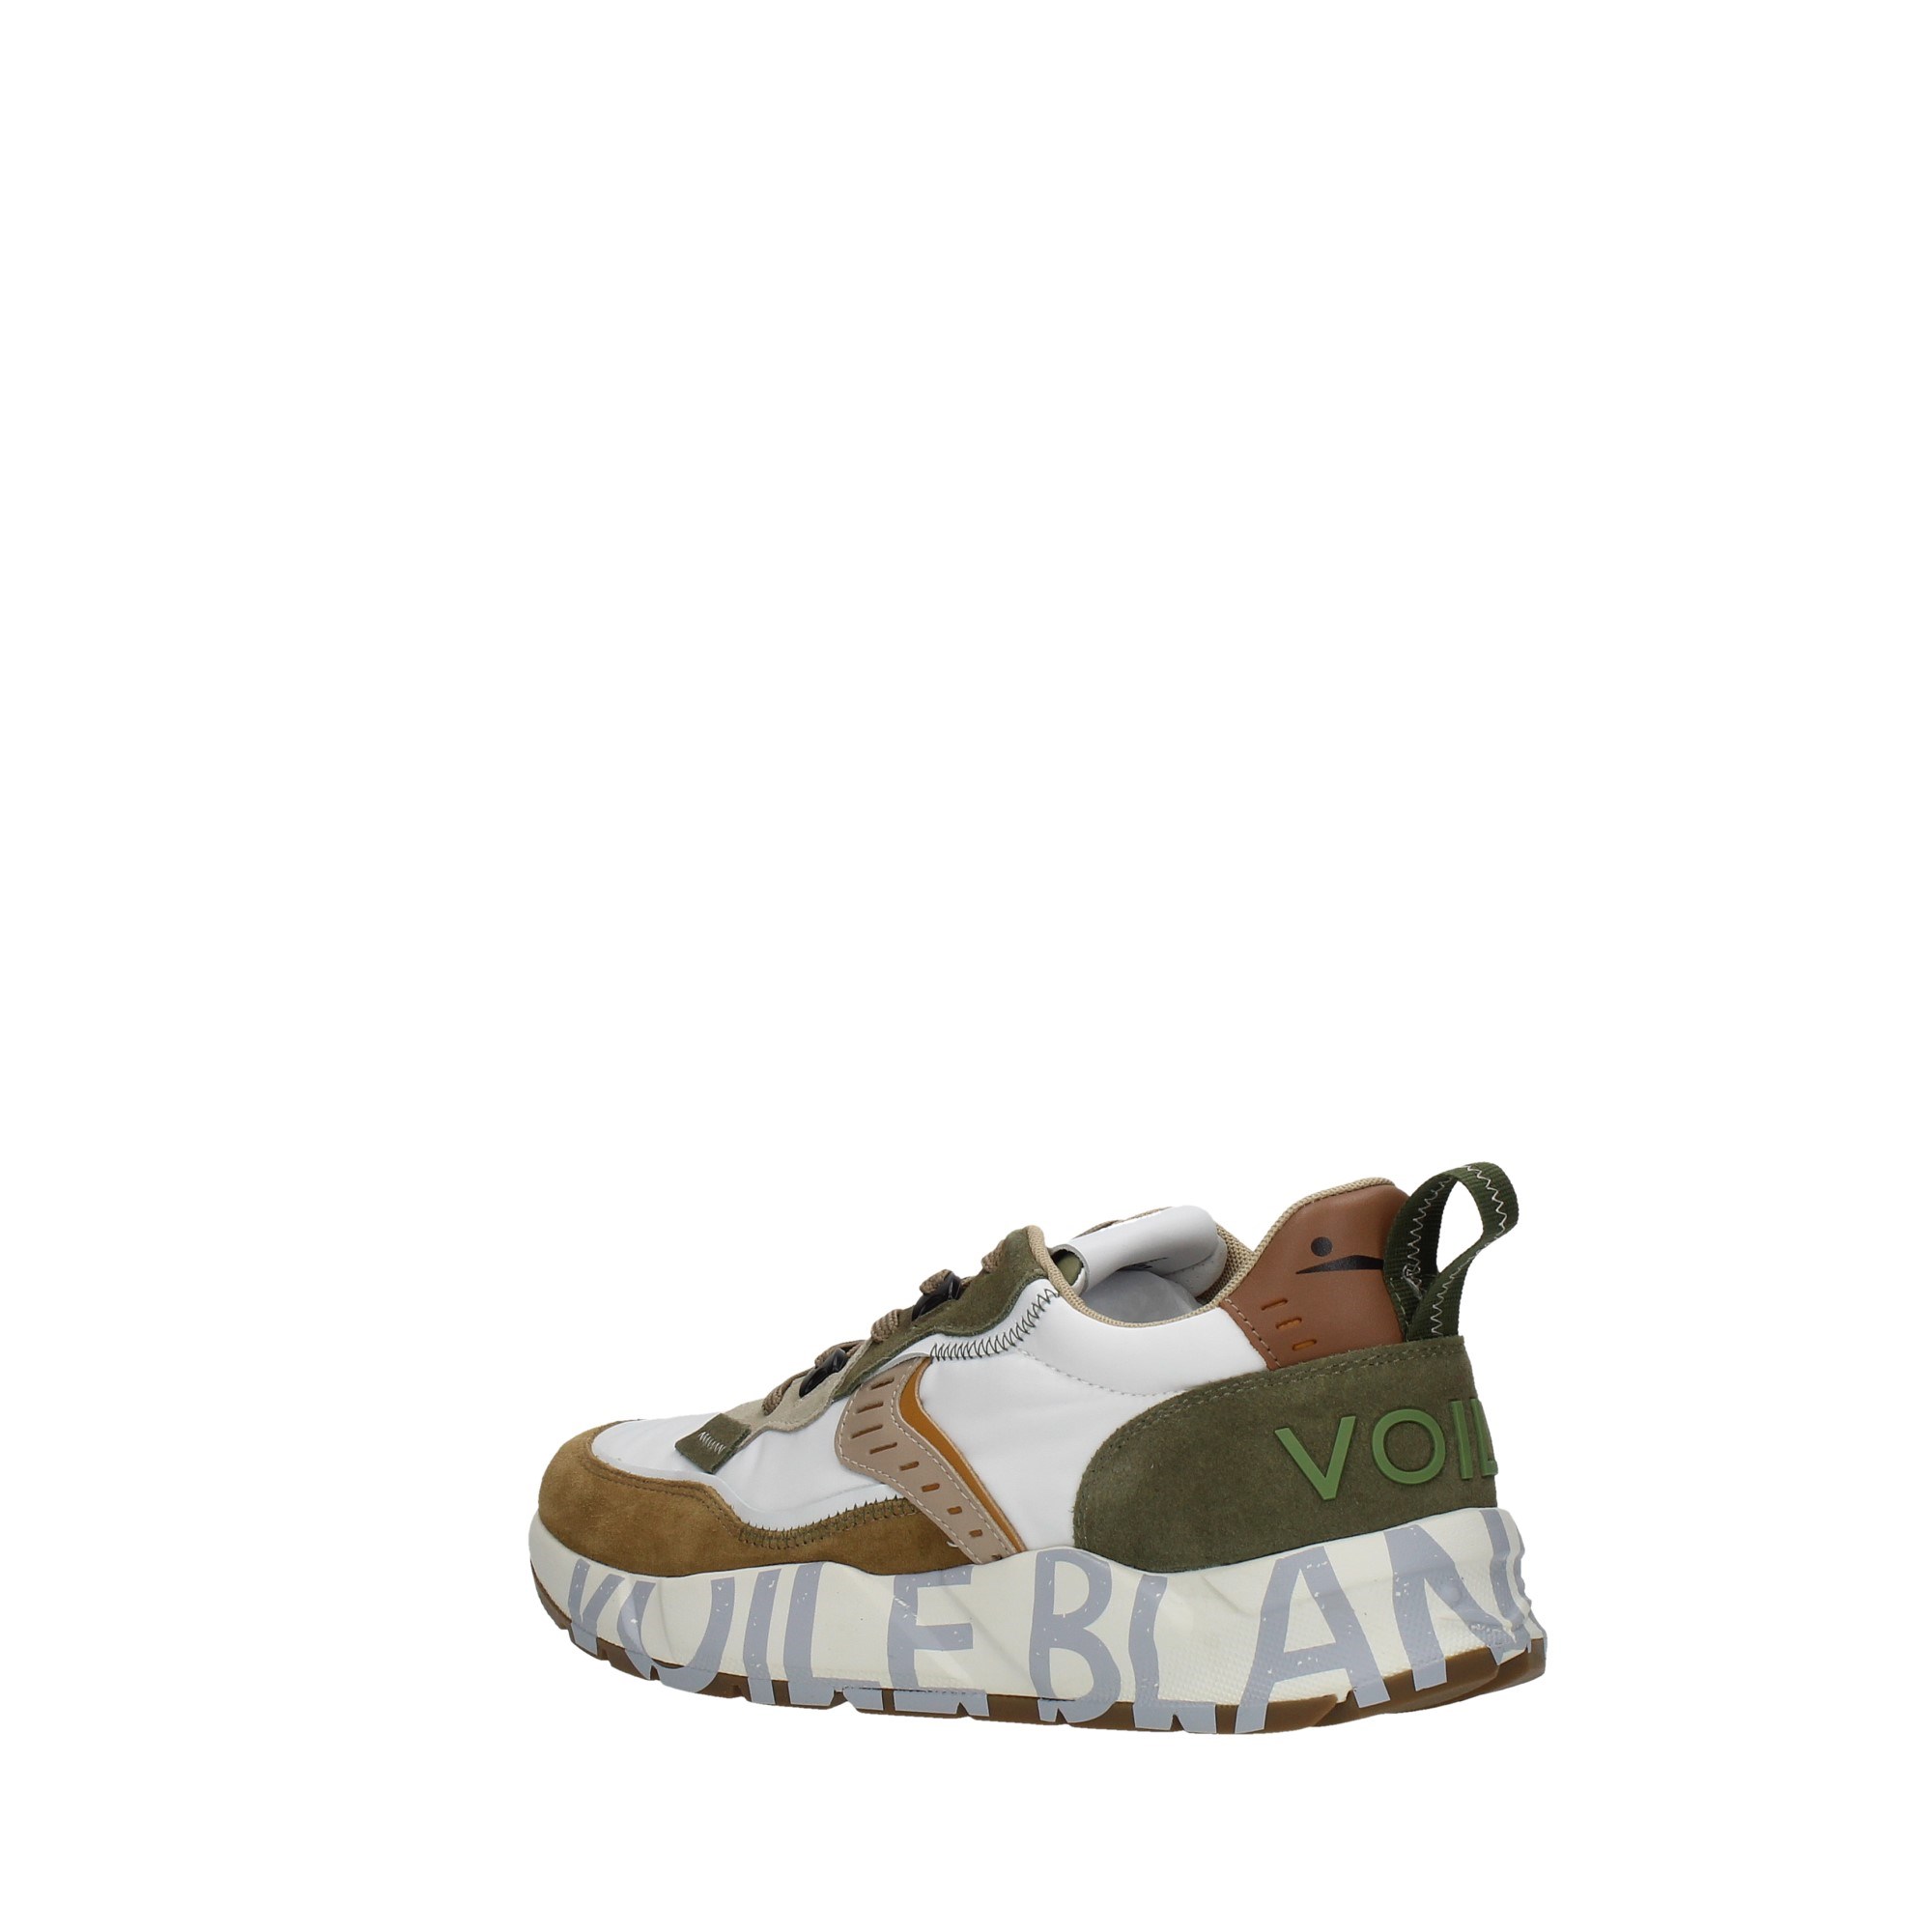 Voile Blanche Scarpe Uomo Sneakers Beige 201-8289-01